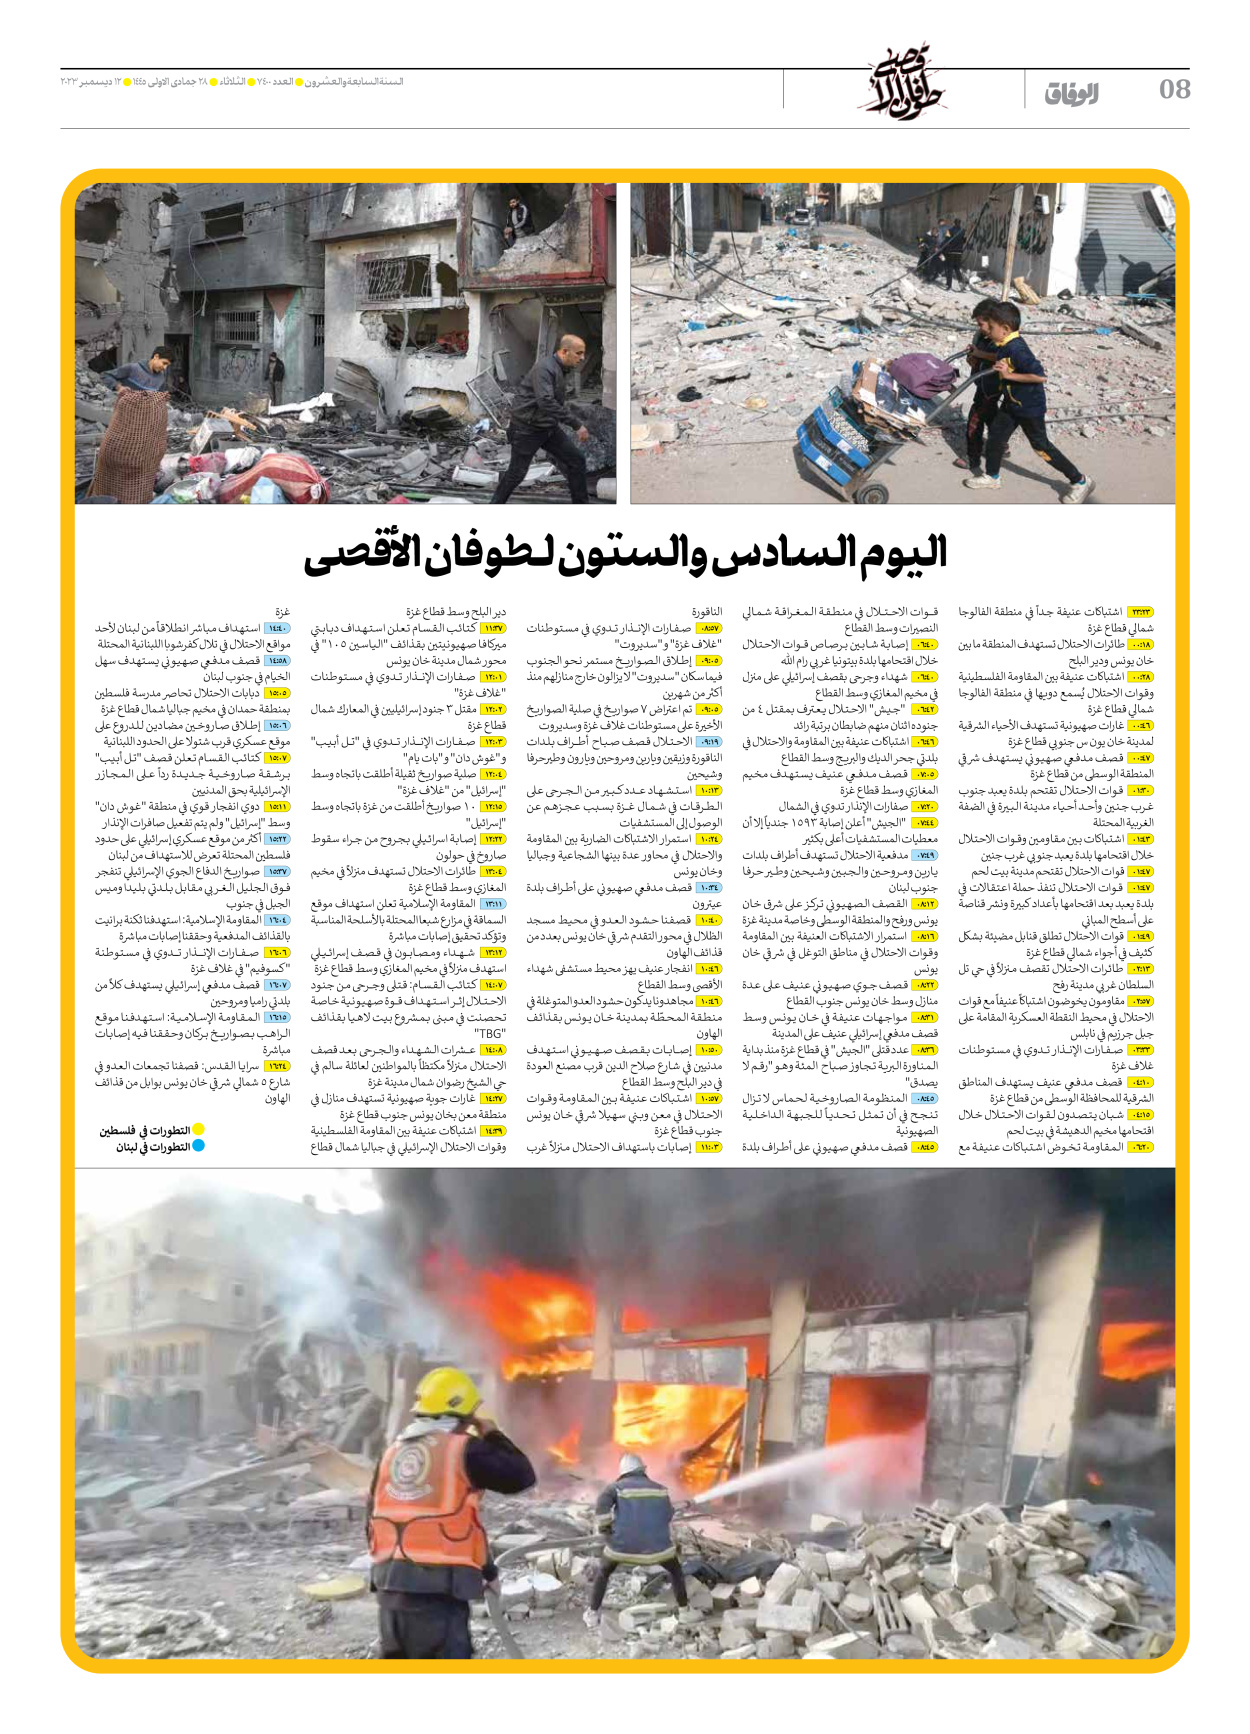 صحیفة ایران الدولیة الوفاق - العدد سبعة آلاف وأربعمائة - ١٢ ديسمبر ٢٠٢٣ - الصفحة ۸